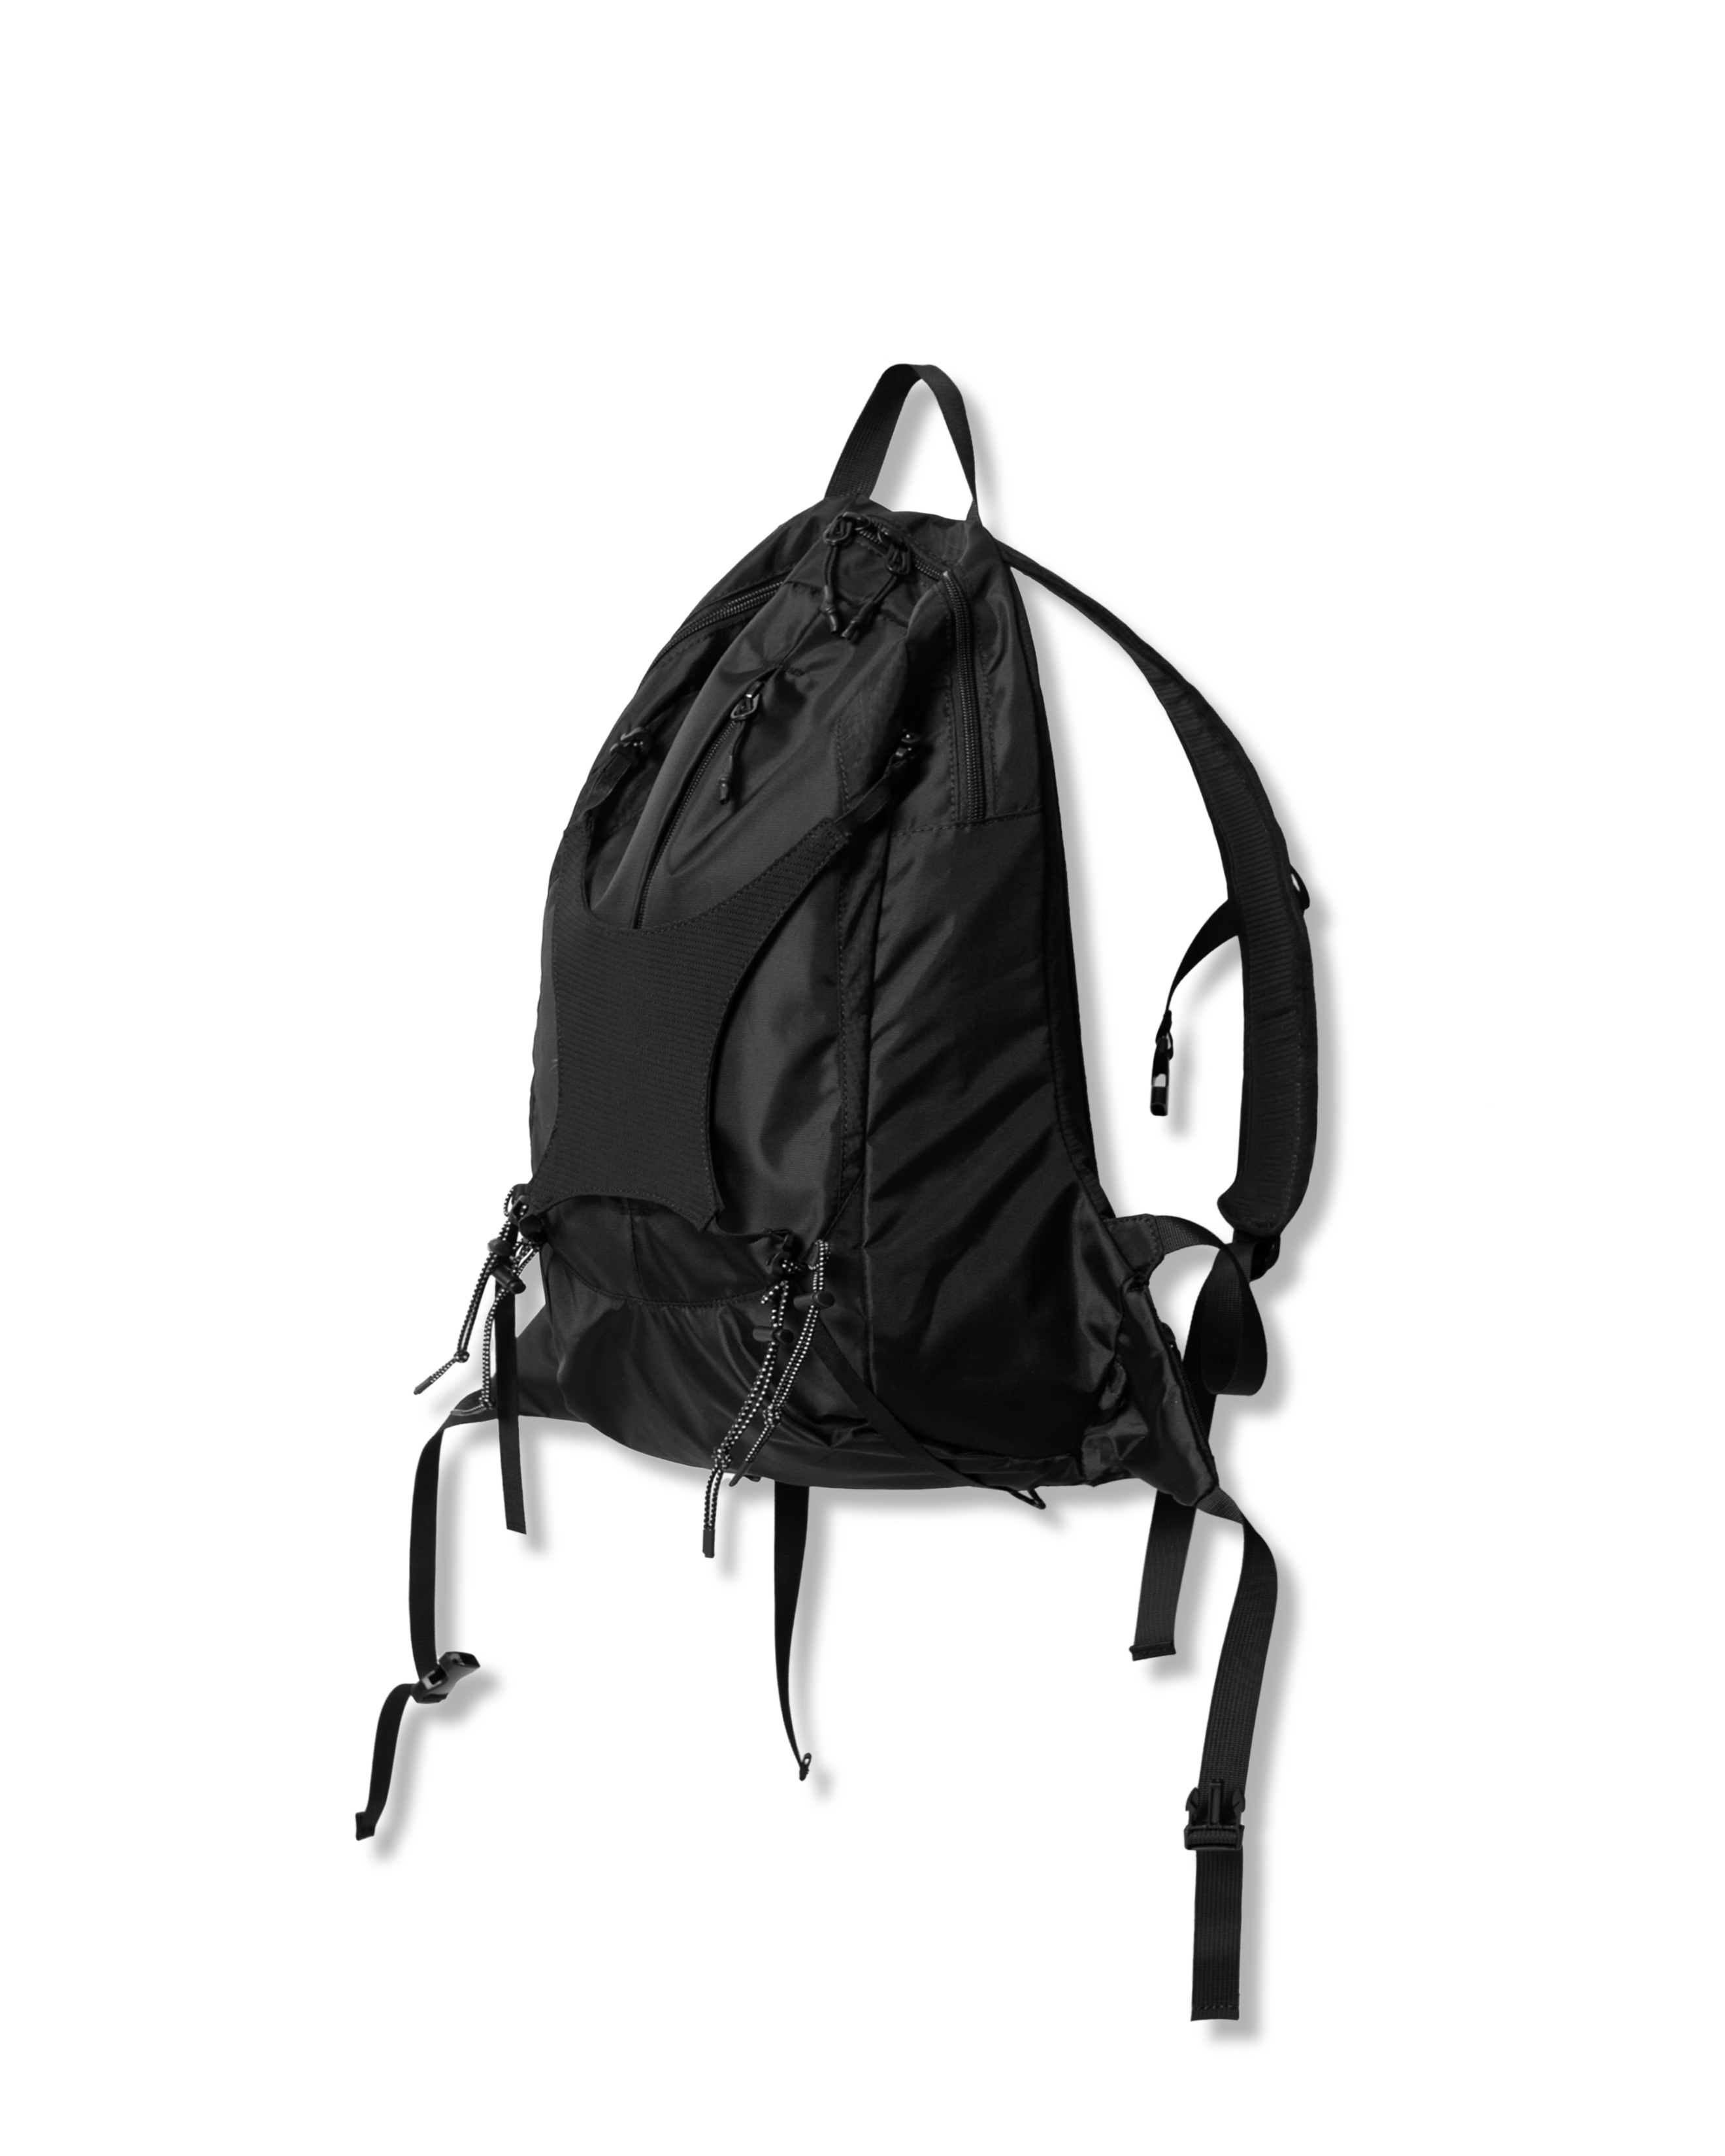 X Cover Hiking Backpack - Black